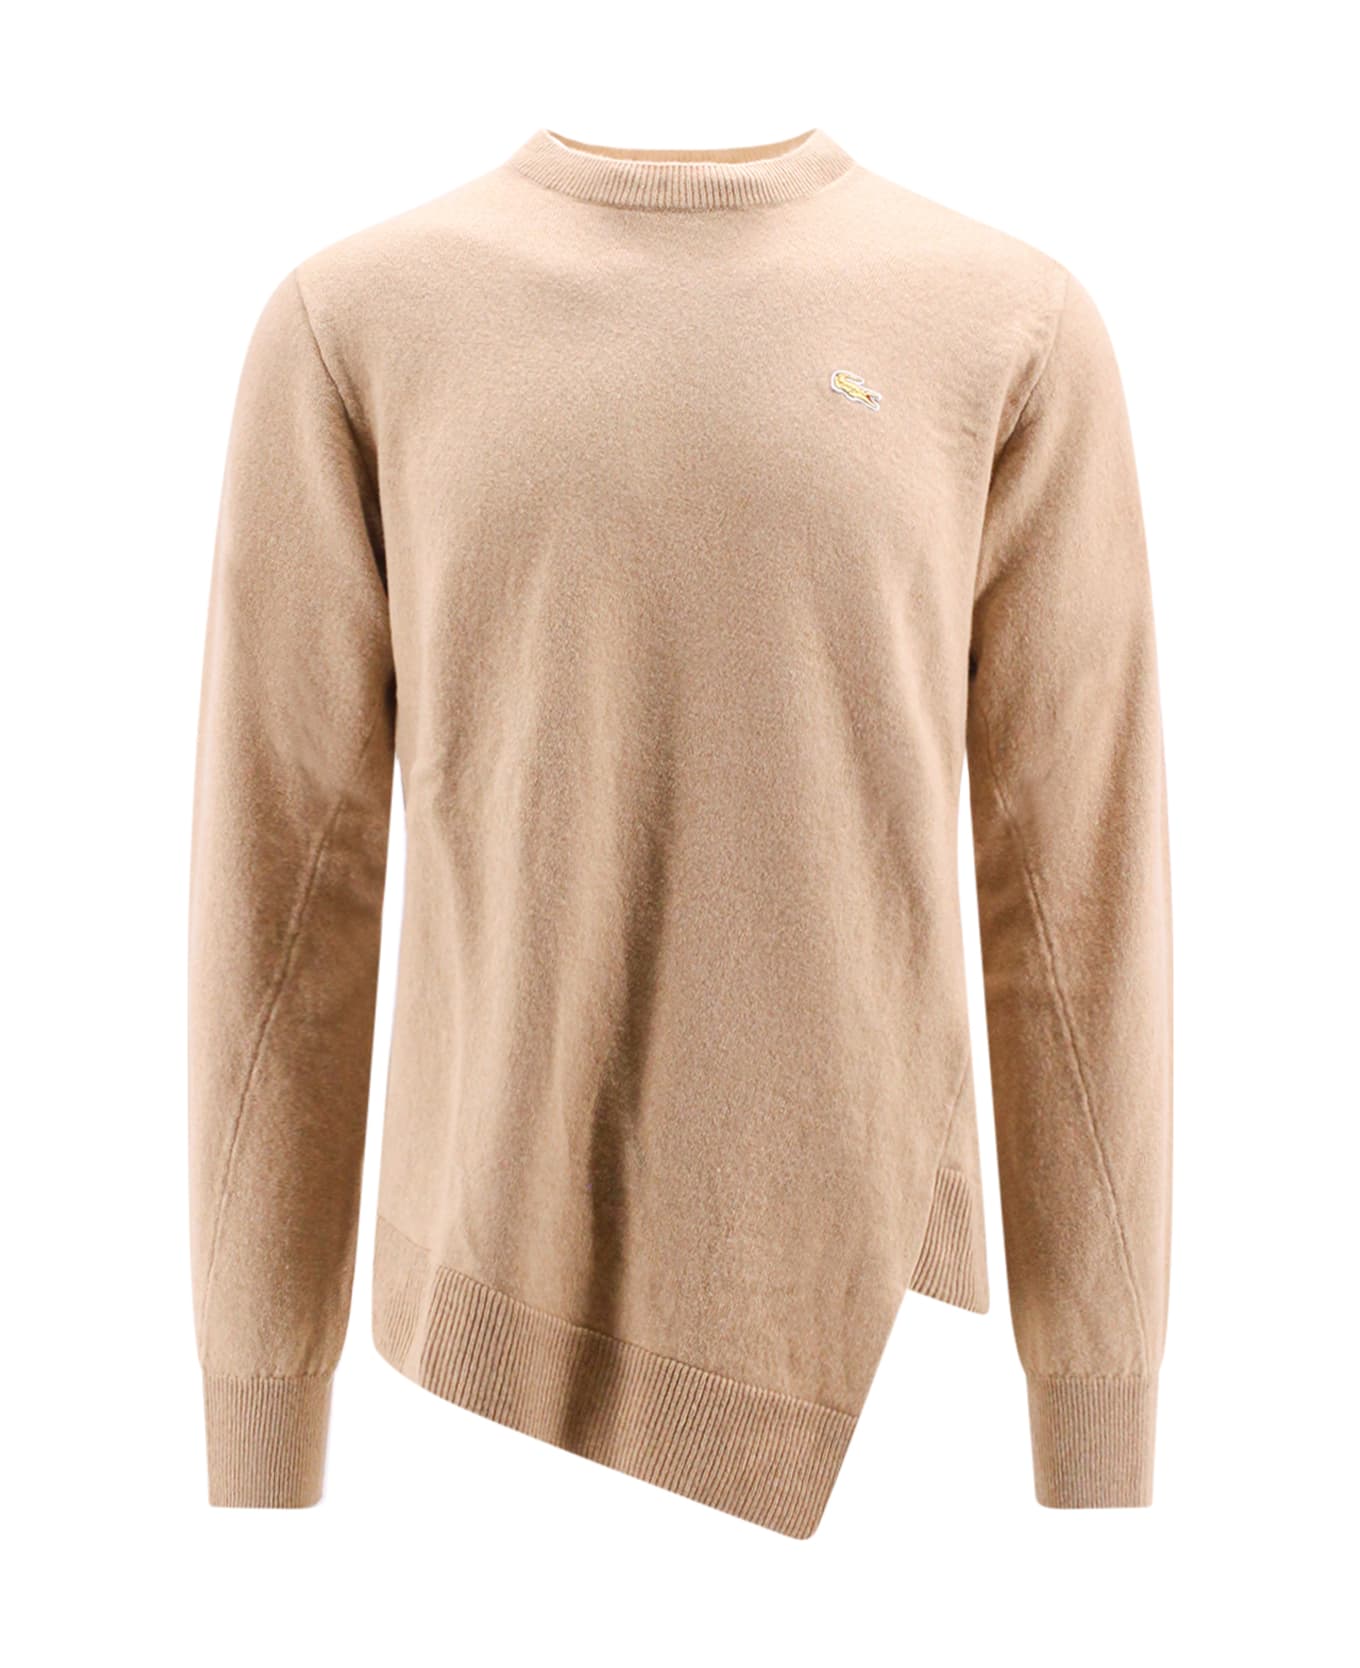 Comme des Garçons Shirt Sweater Sweater - CAMEL ニットウェア